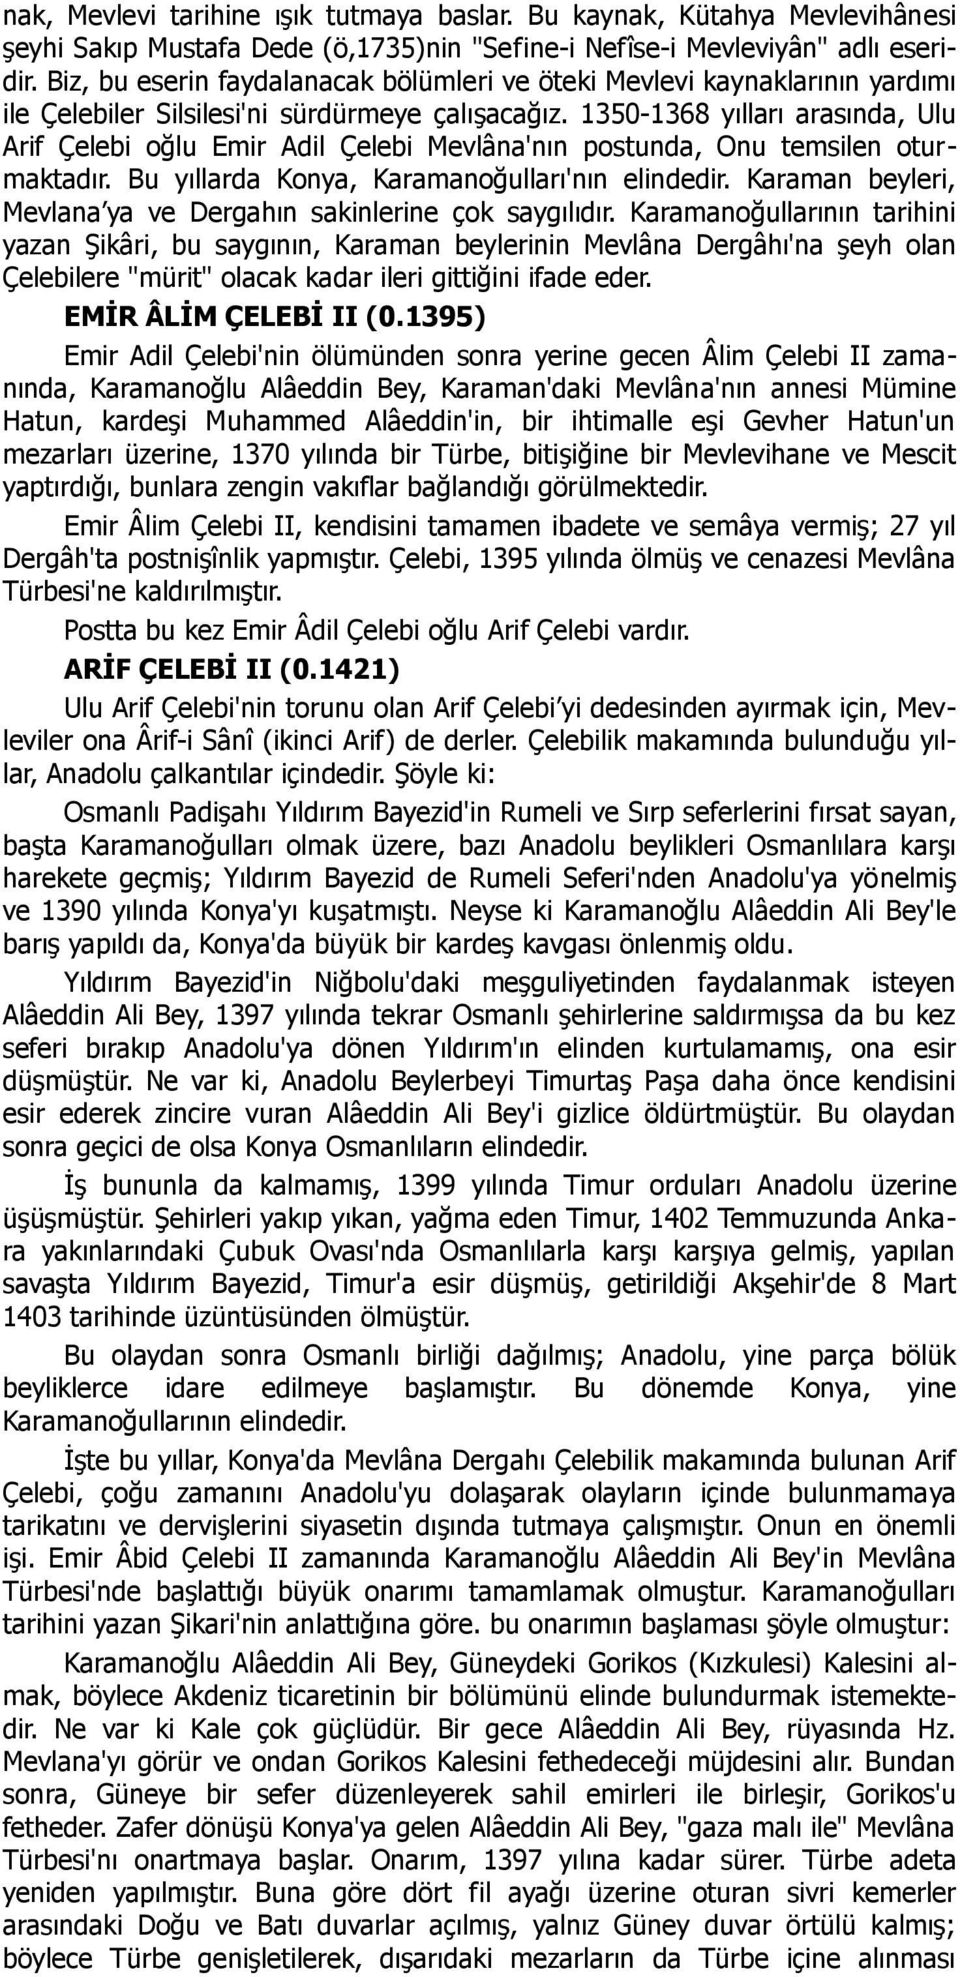 1350-1368 yılları arasında, Ulu Arif Çelebi oğlu Emir Adil Çelebi Mevlâna'nın postunda, Onu temsilen oturmaktadır. Bu yıllarda Konya, Karamanoğulları'nın elindedir.